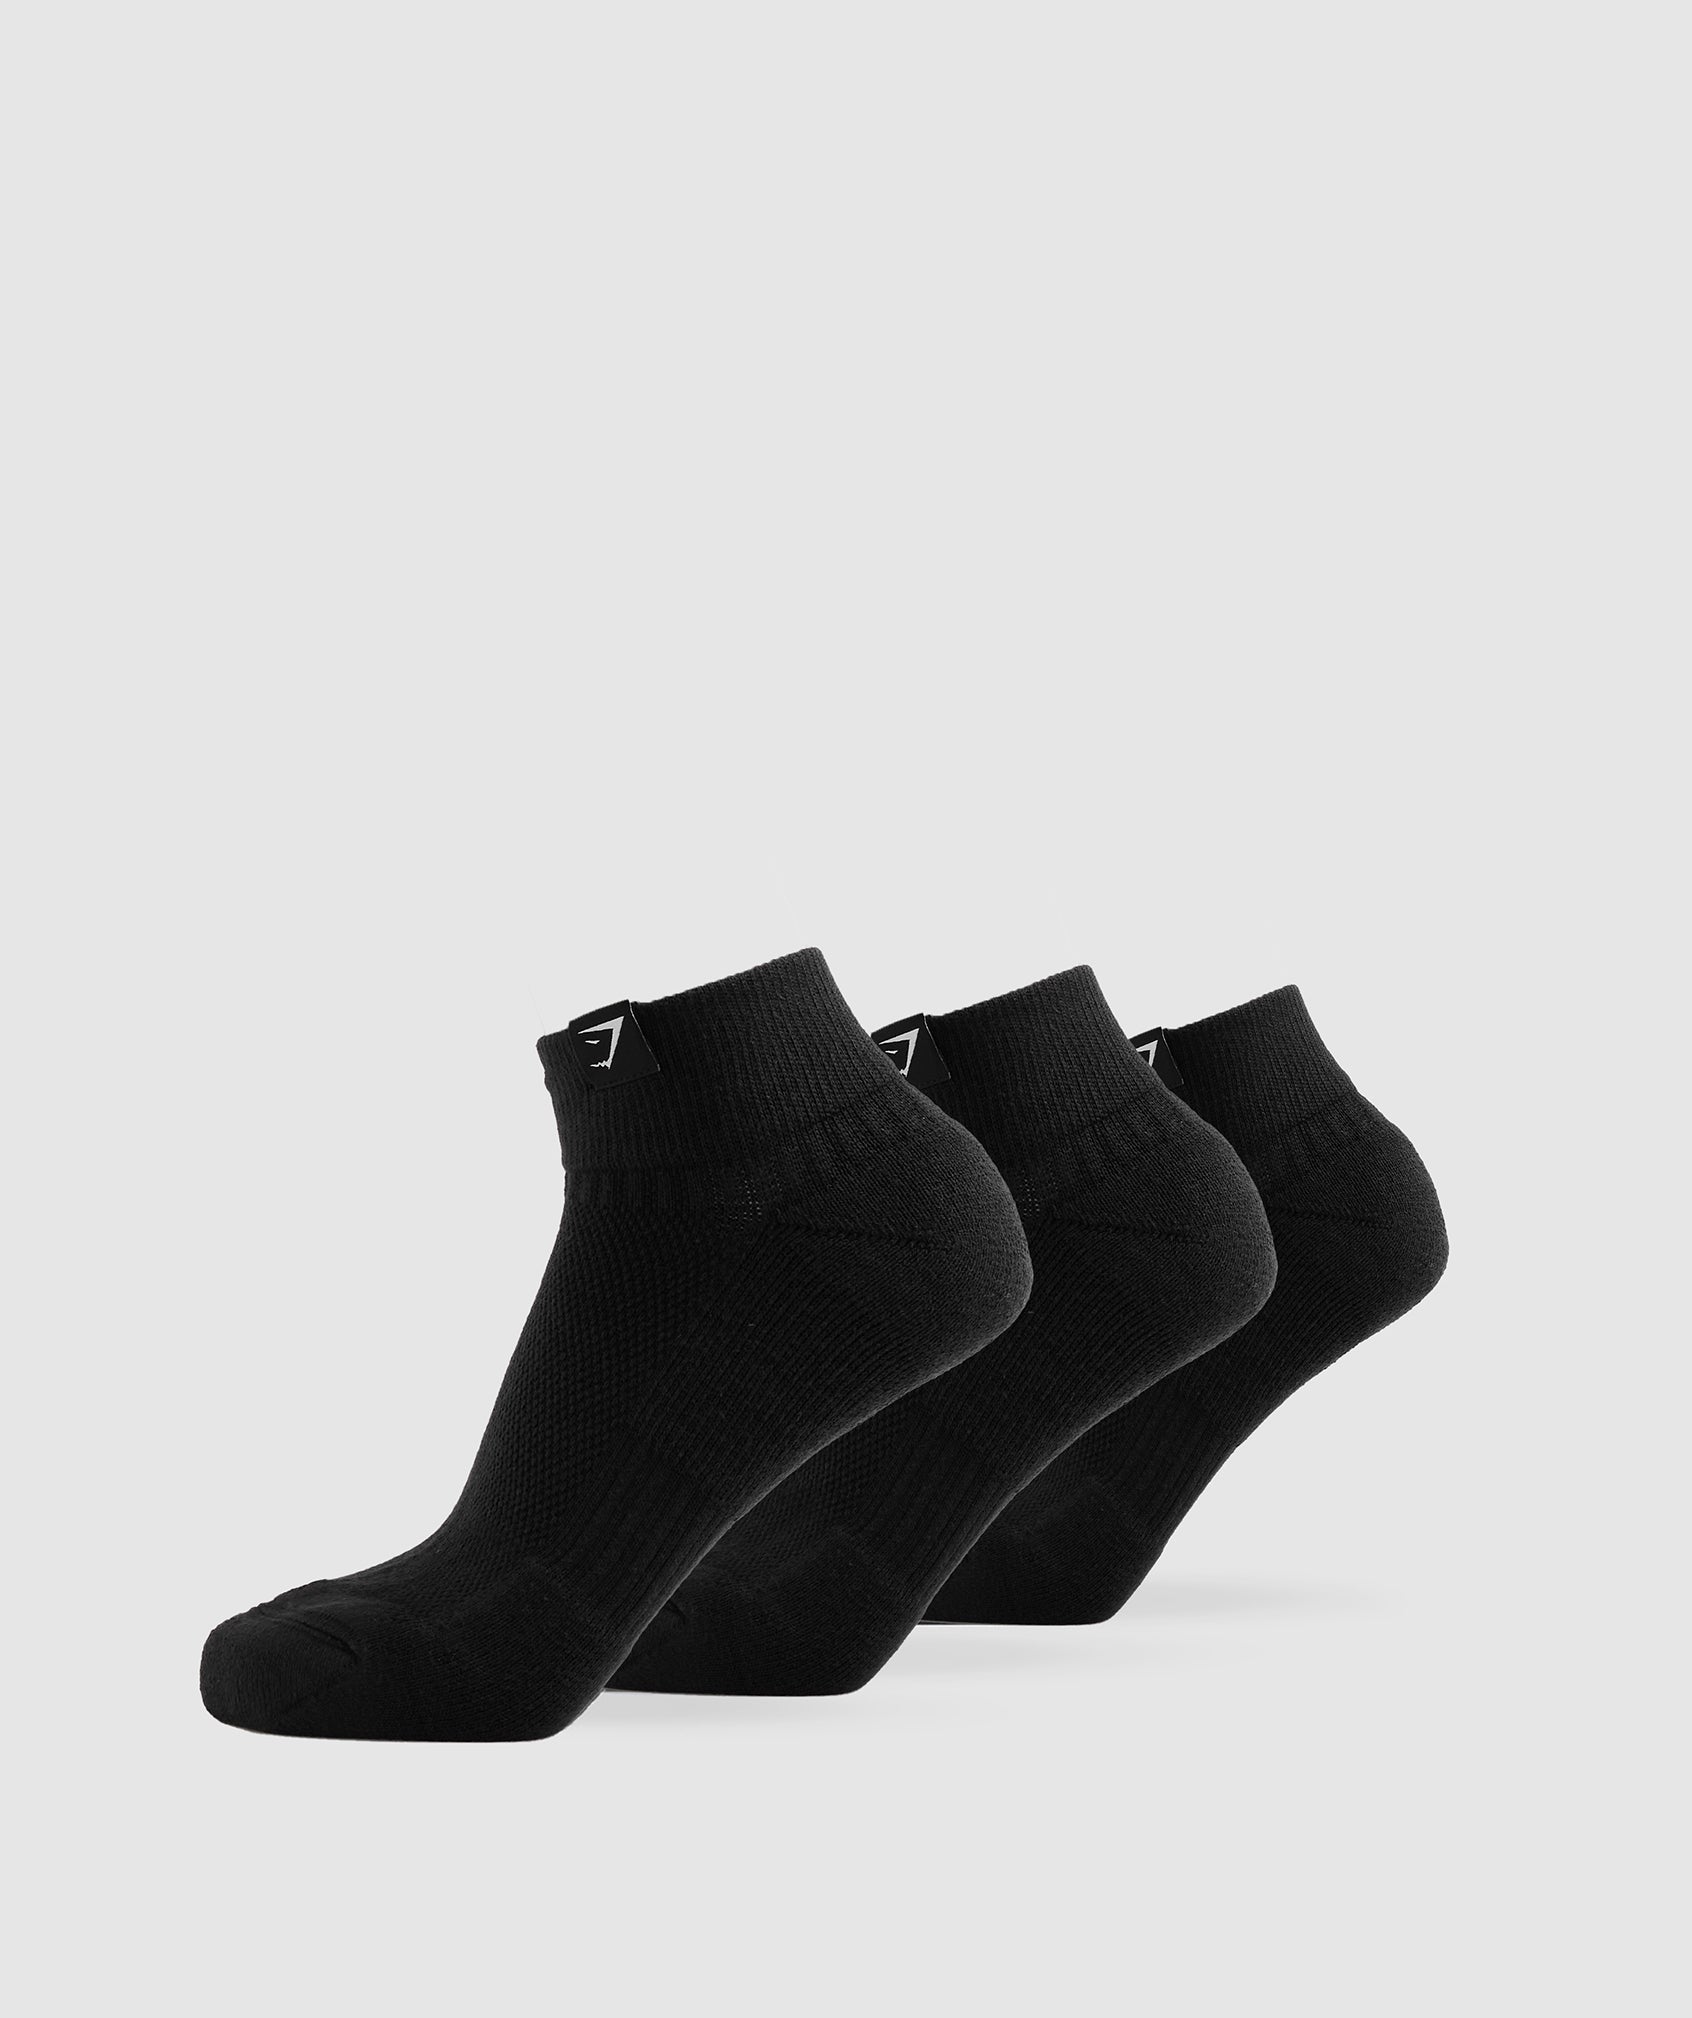 Gymshark Ankle Performance Socks - Black